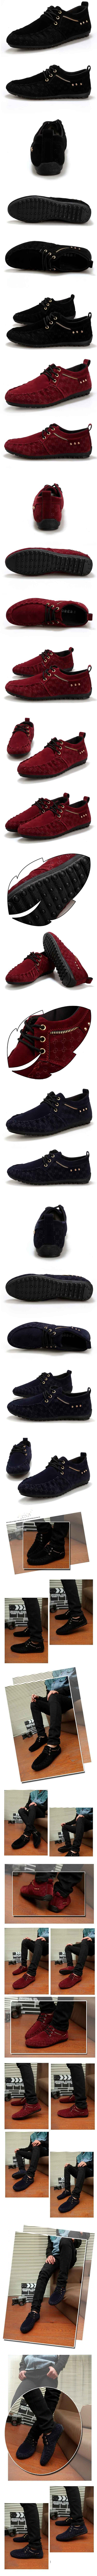 cari sepatu pantofel pria keren terbuat dari bahan bludru ? klik dan pesan online sekarang, ada ratusan model sepatu pantofel pria di store.pakaianfashionpria.com